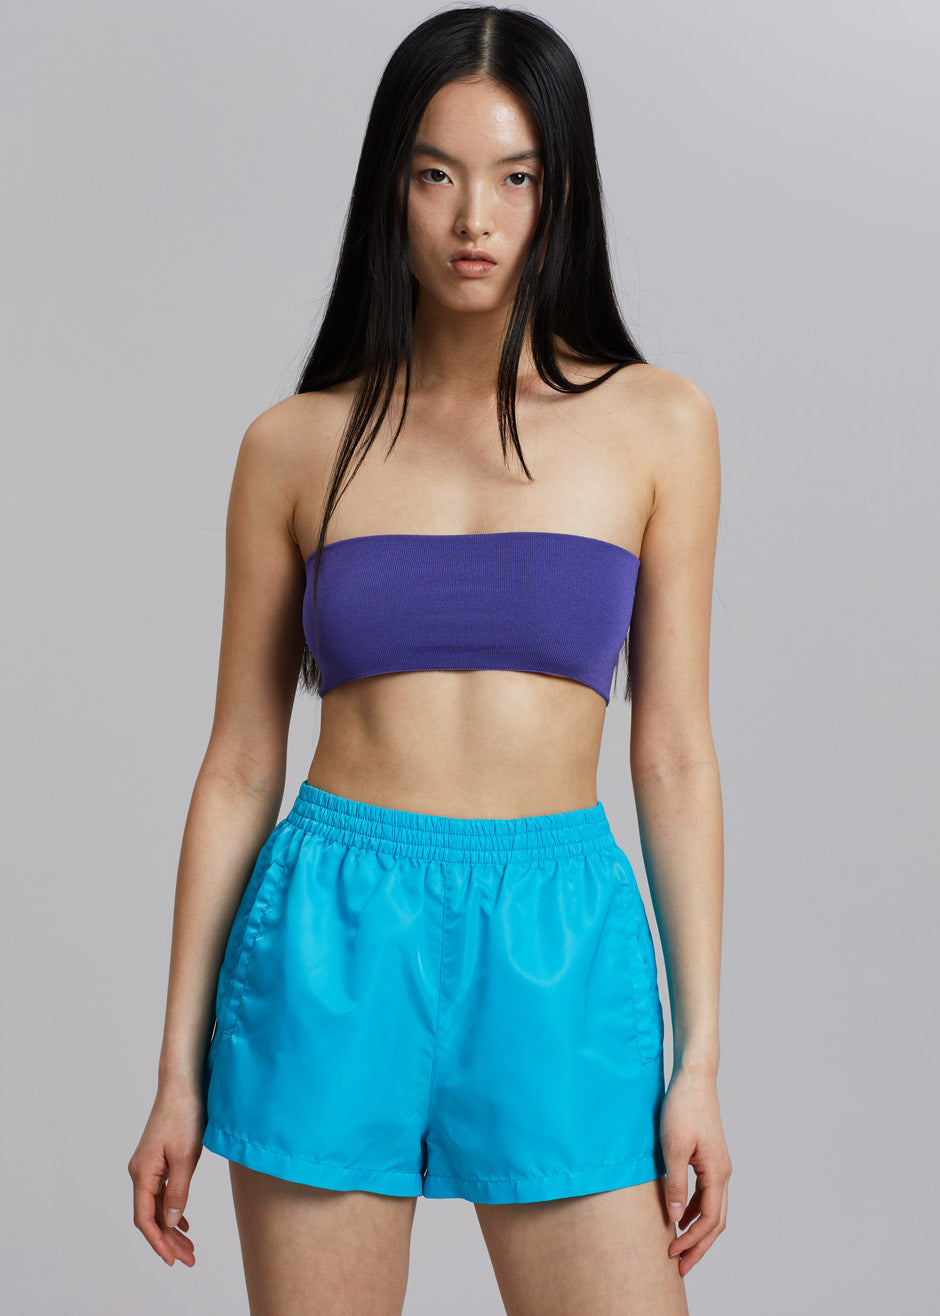 Perla Gym Shorts - Turquoise - 9